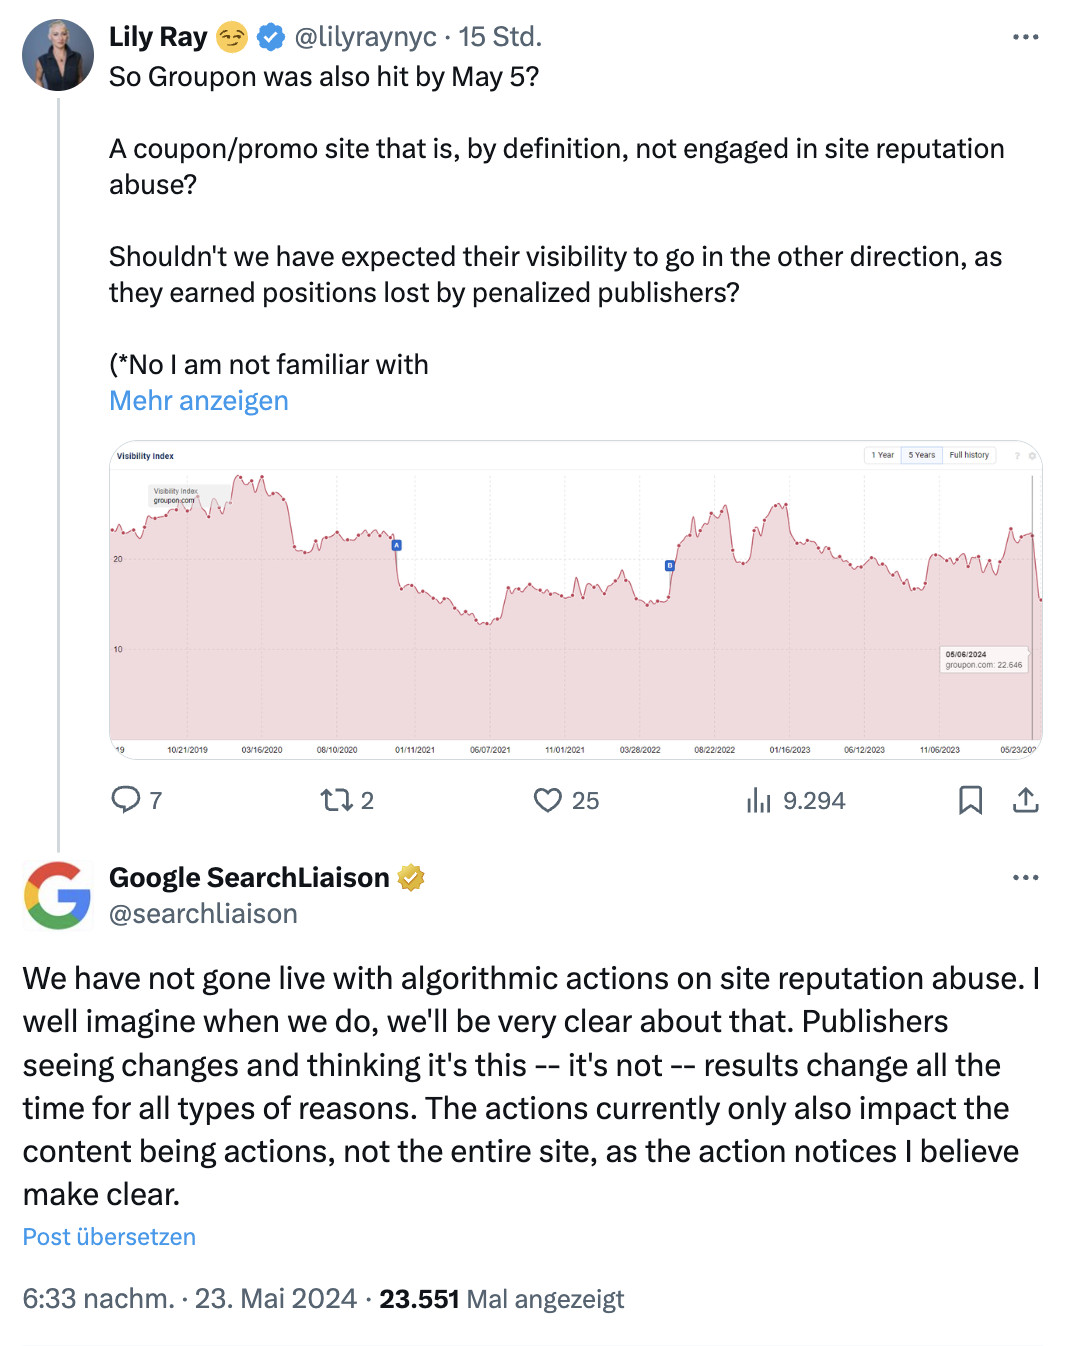 Google: algorithmische Umsetzung der Site Reputation Abuse Policy ist noch nicht live